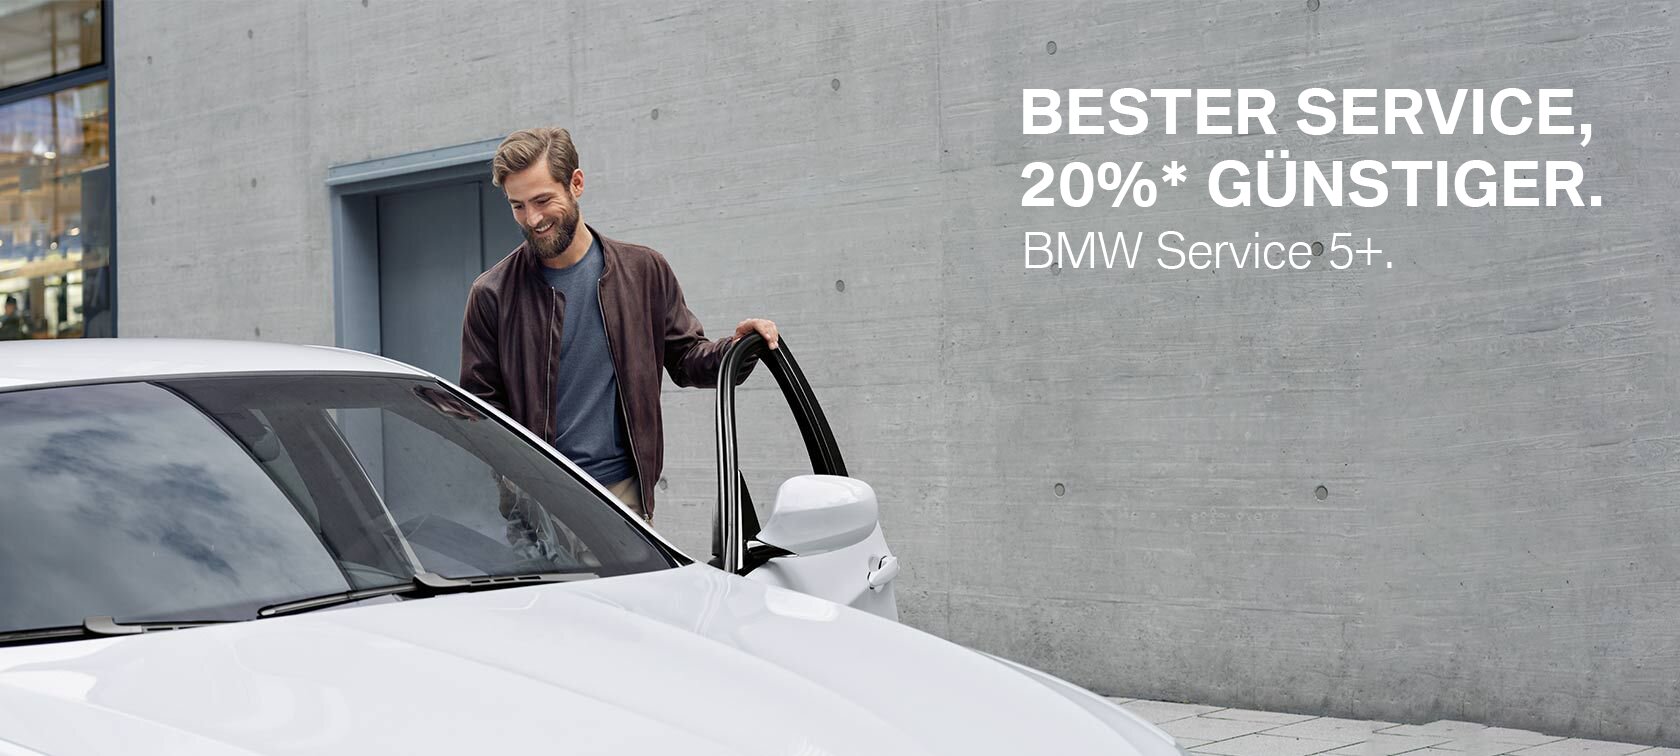 BMW Service 5+